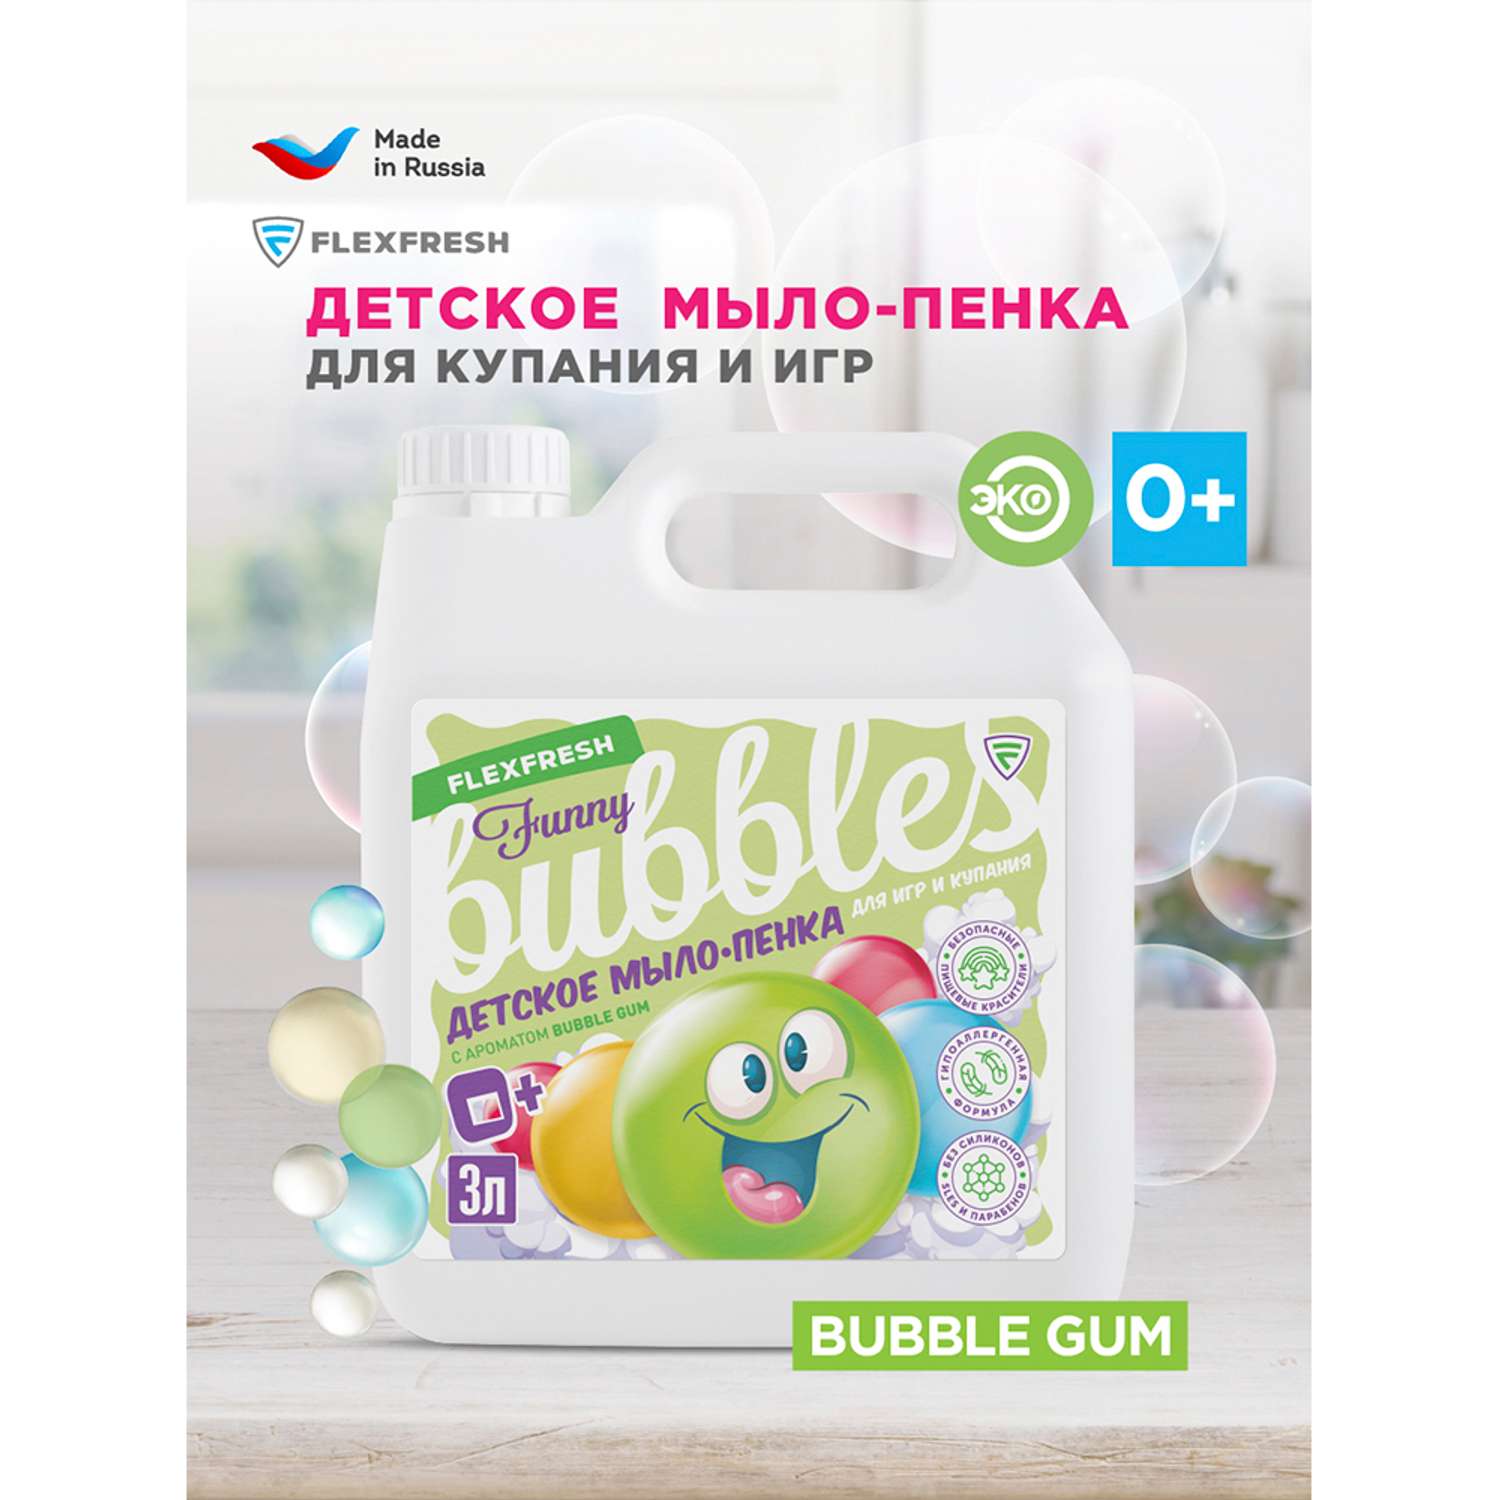 Мыло-пенка детская цветная Flexfresh для купания и игр с ароматом bubble gum 3 л - фото 2